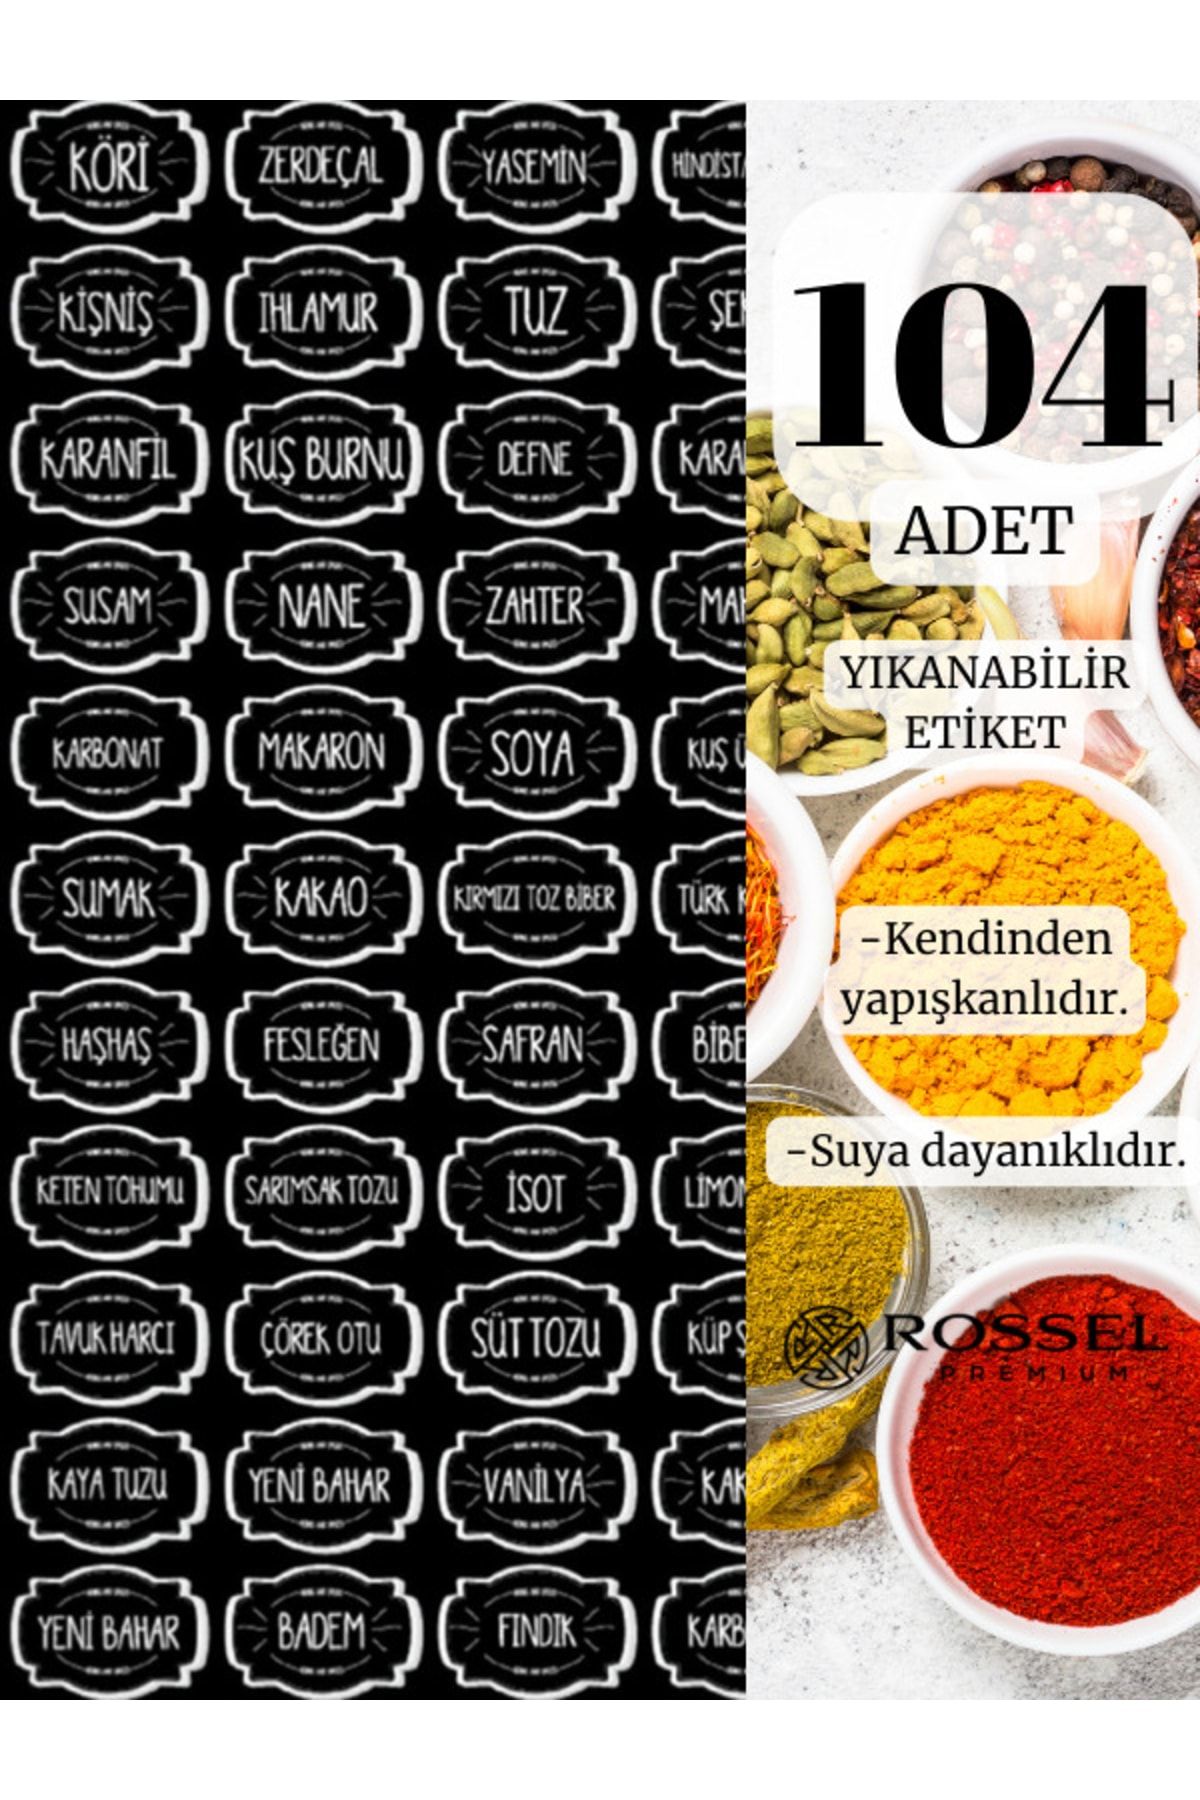 Rossel Premium 104 Lü Yıkanabilir Mutfak Etiketi Siyah Şeffaf Gld0317